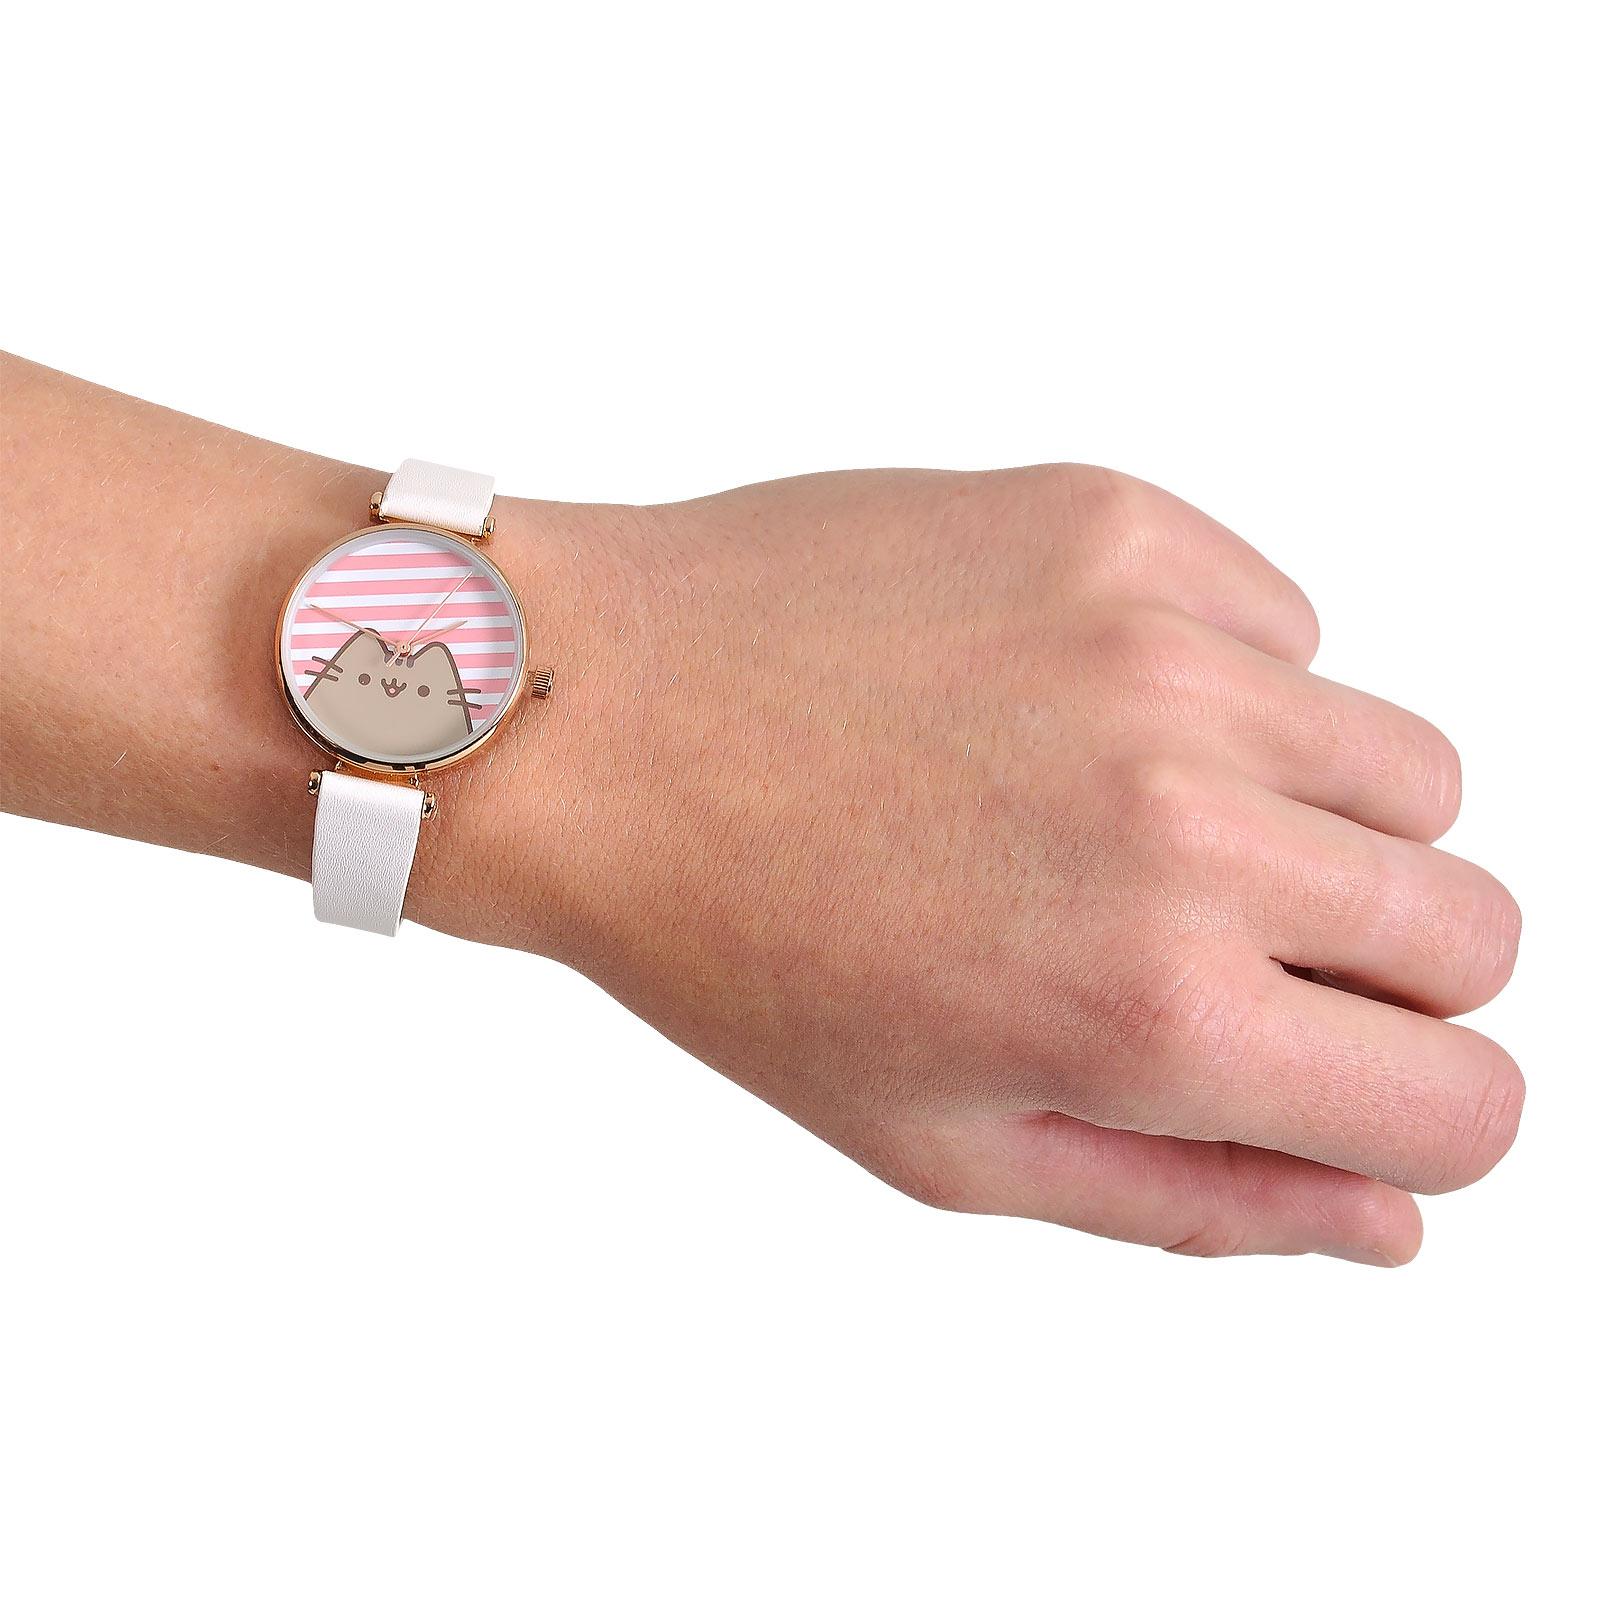 Pusheen - Stripes horloge wit